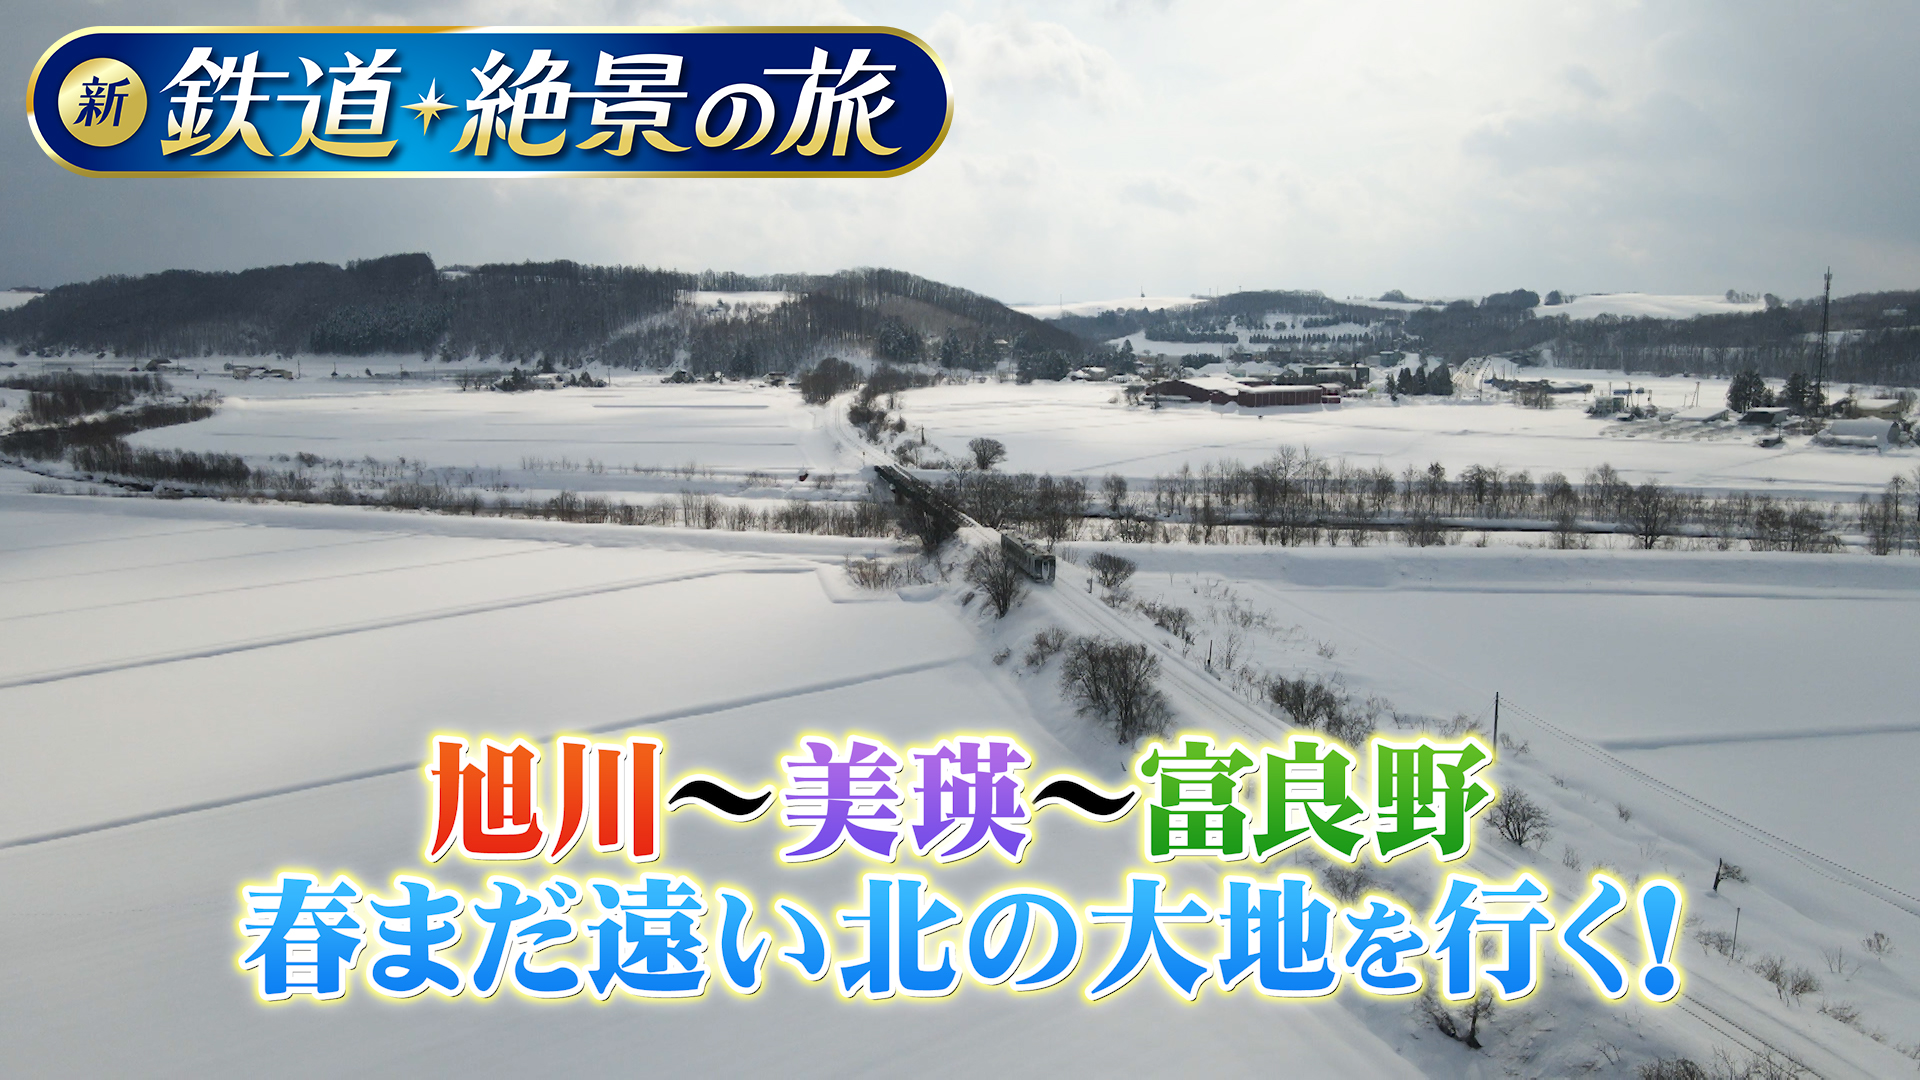 無料テレビで【BS朝日】新 鉄道・絶景の旅を視聴する